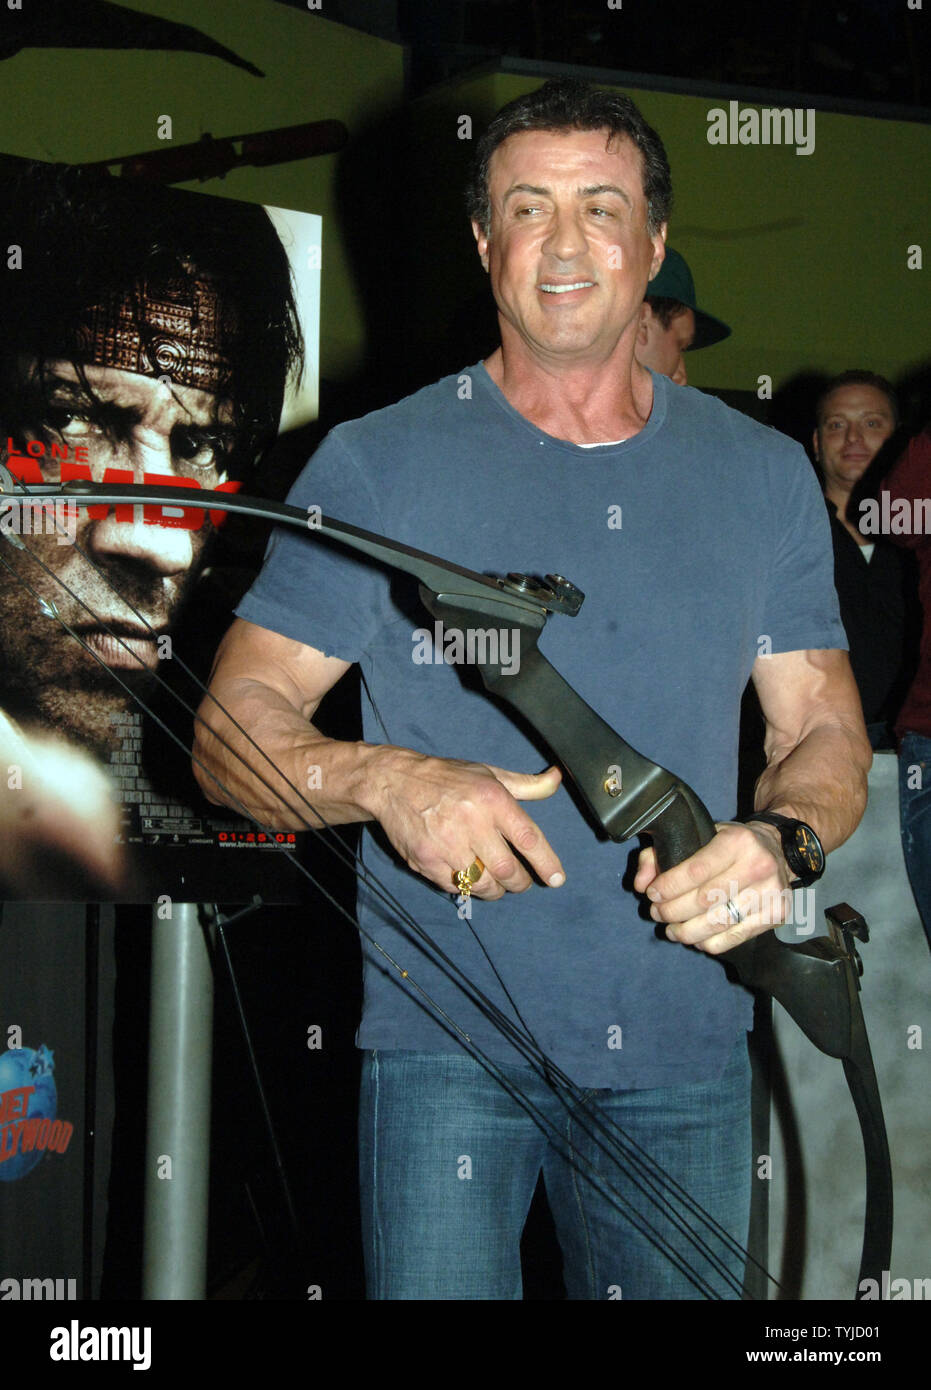 Attore Sylvester Stallone appare al Planet Hollywood di New York per presentare la prua e la freccia che ha usato nel suo ultimo film "Rambo" il 17 gennaio 2008. (UPI foto/Ezio Petersen) Foto Stock